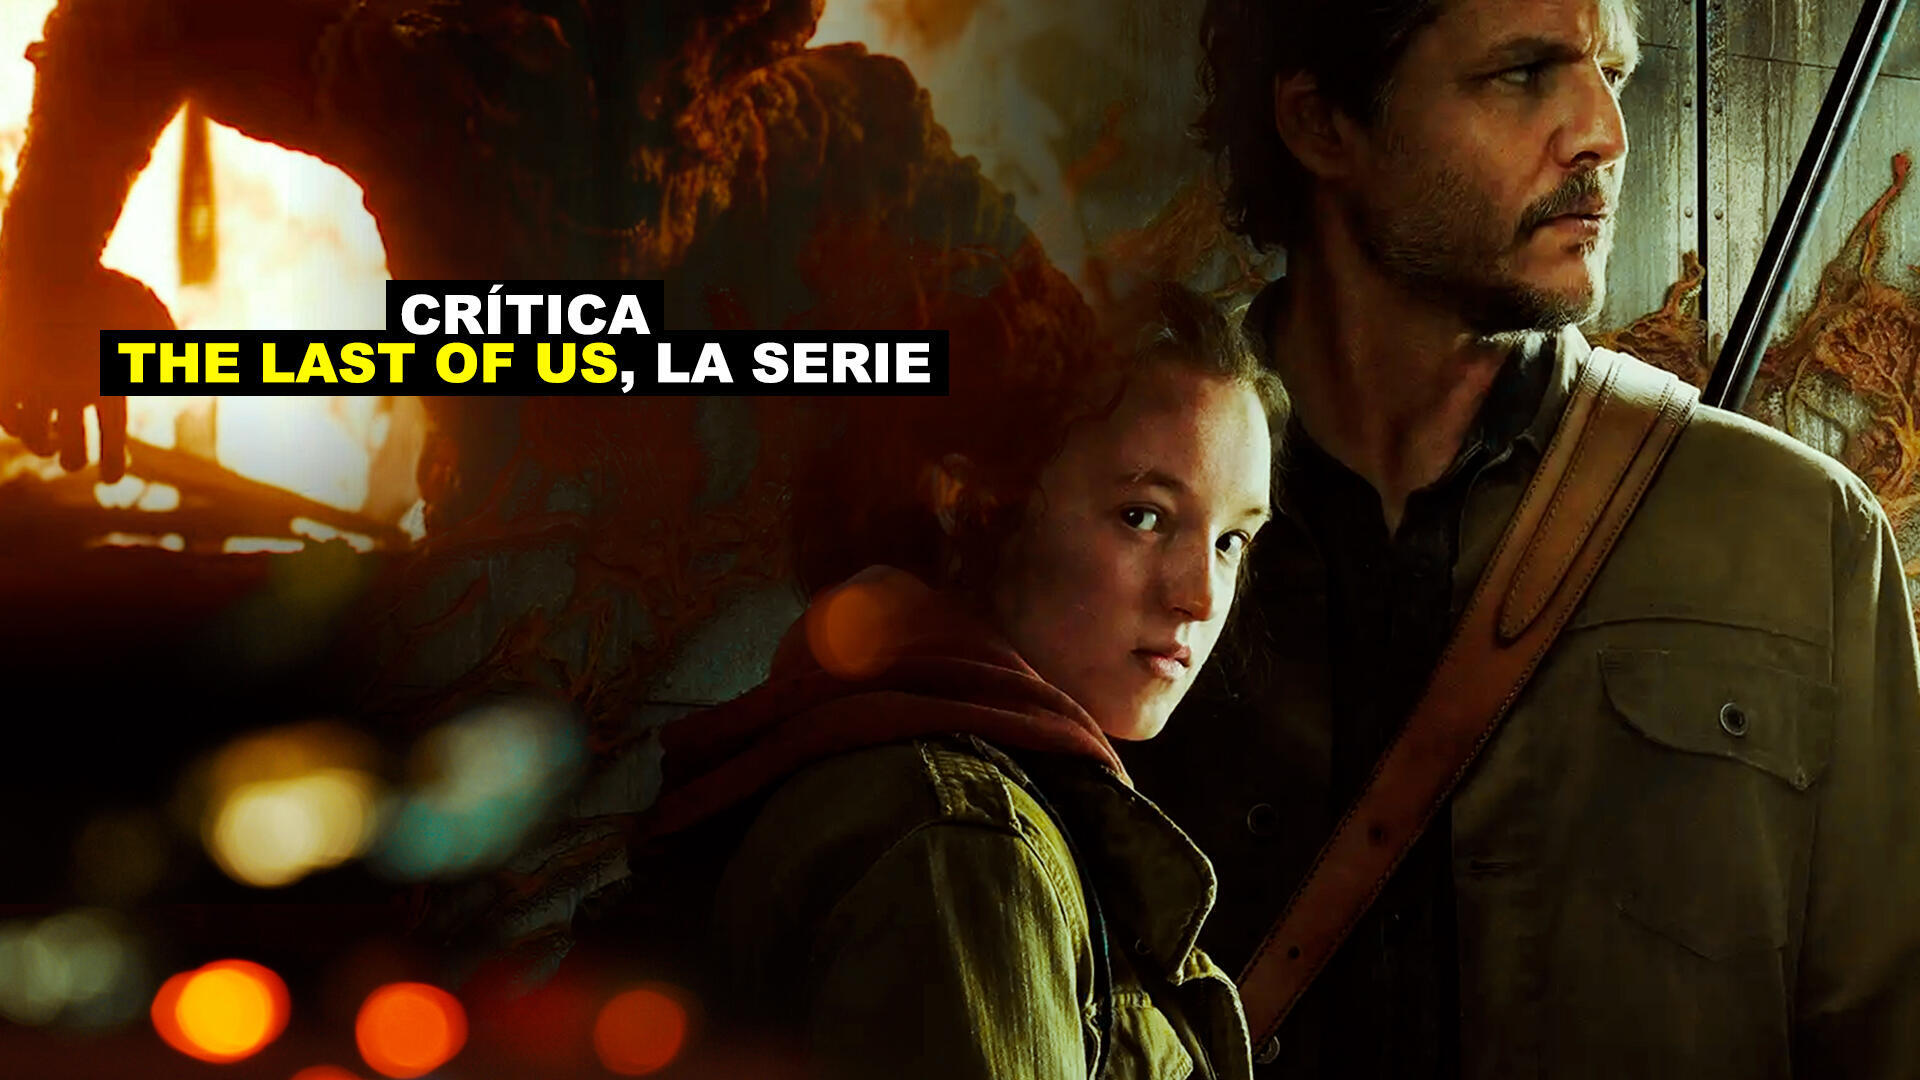 Crtica The Last of Us, una serie excelente que hace justicia a la obra maestra de Naughty Dog